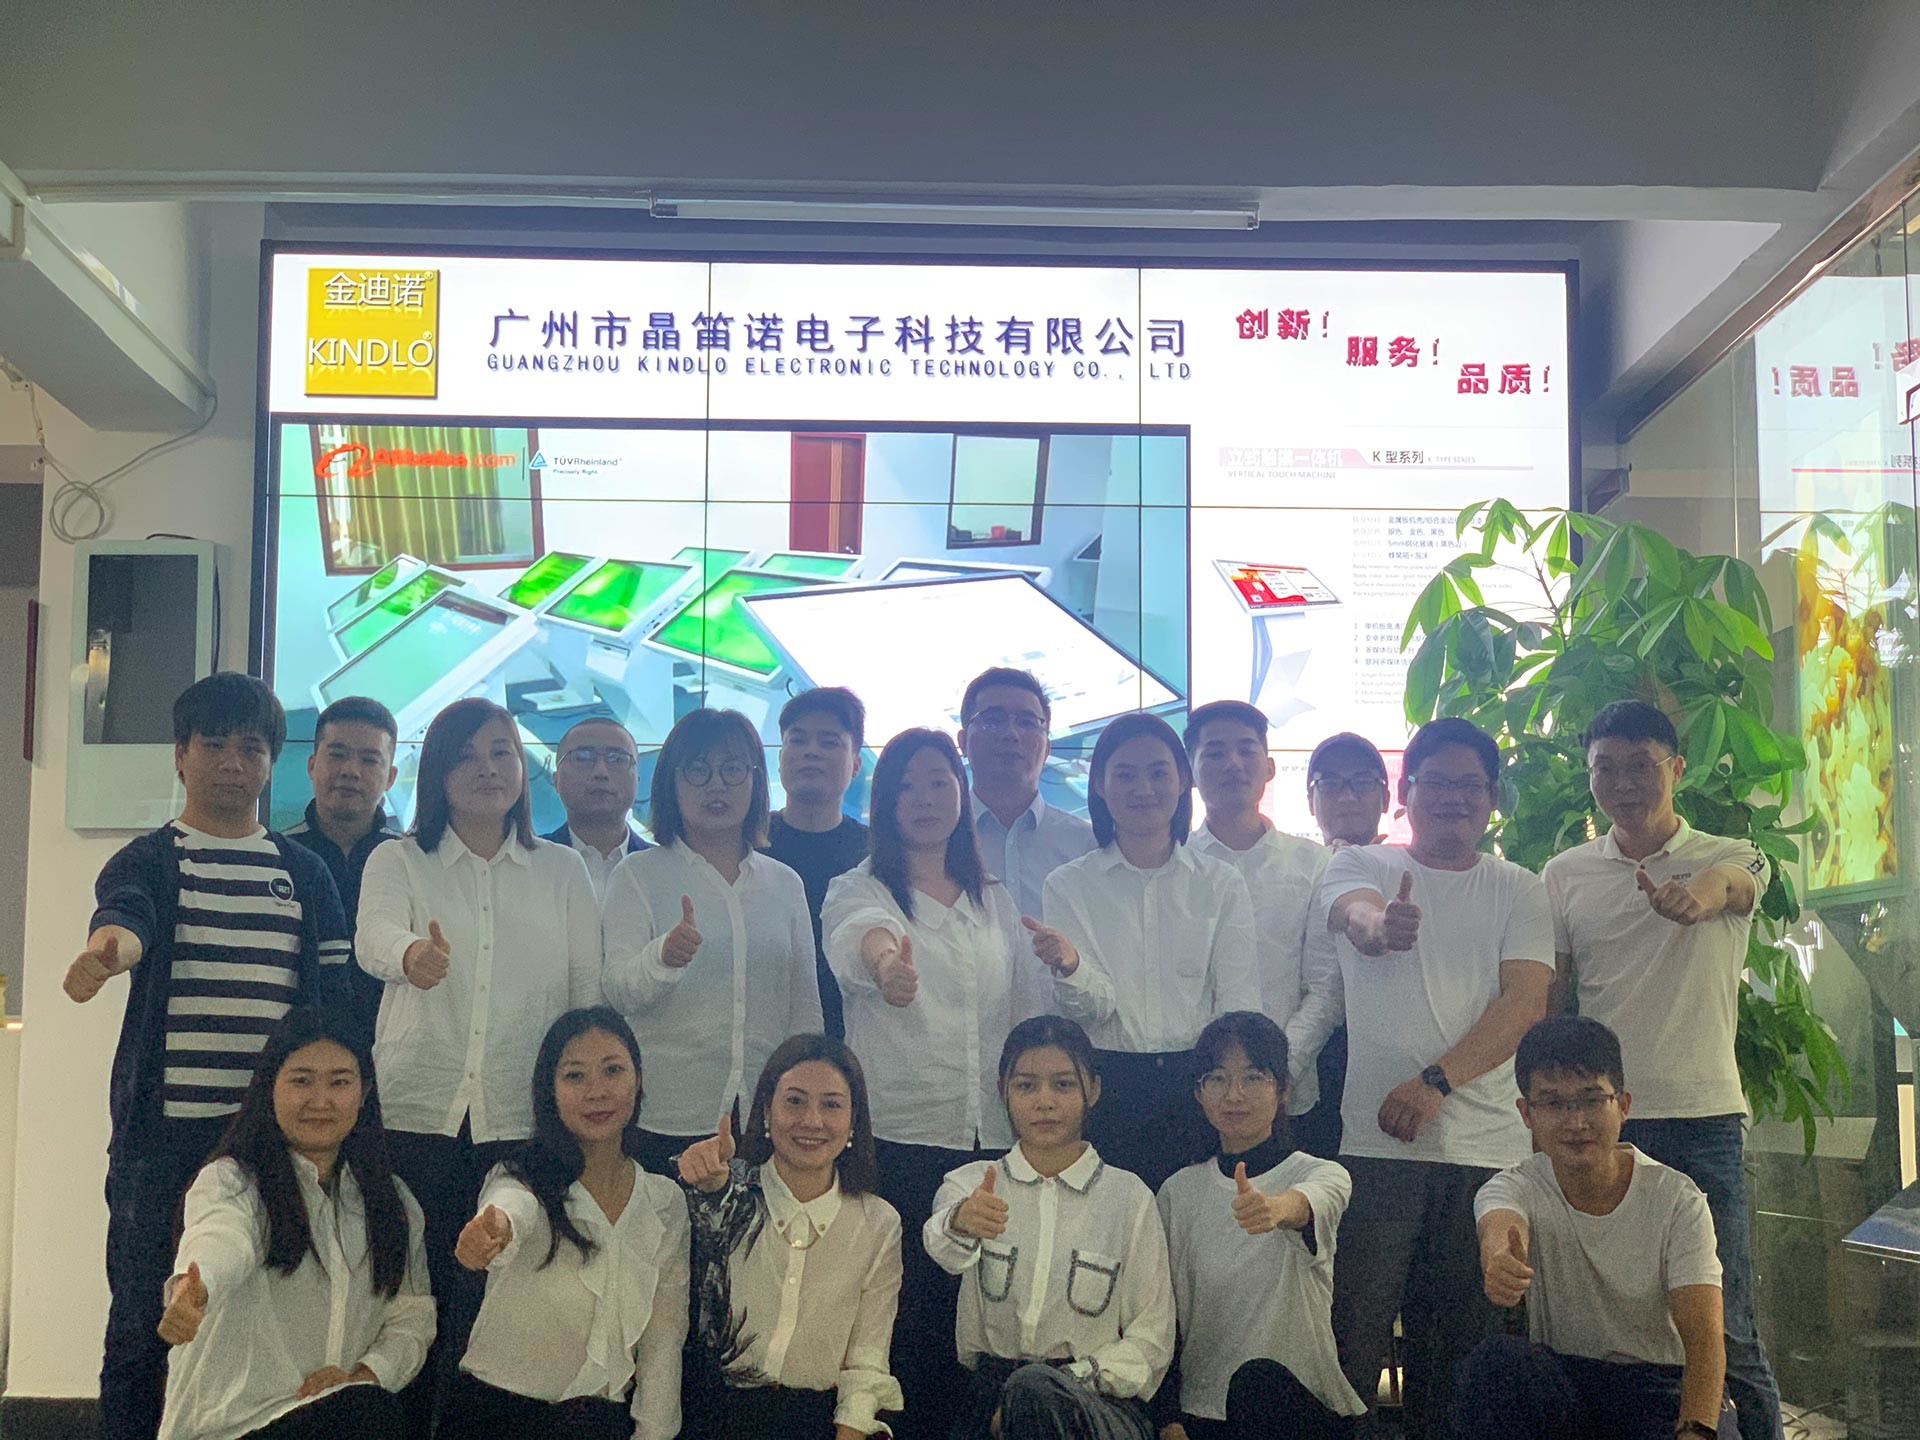 چین Guangzhou Jingdinuo Electronic Technology Co., Ltd.